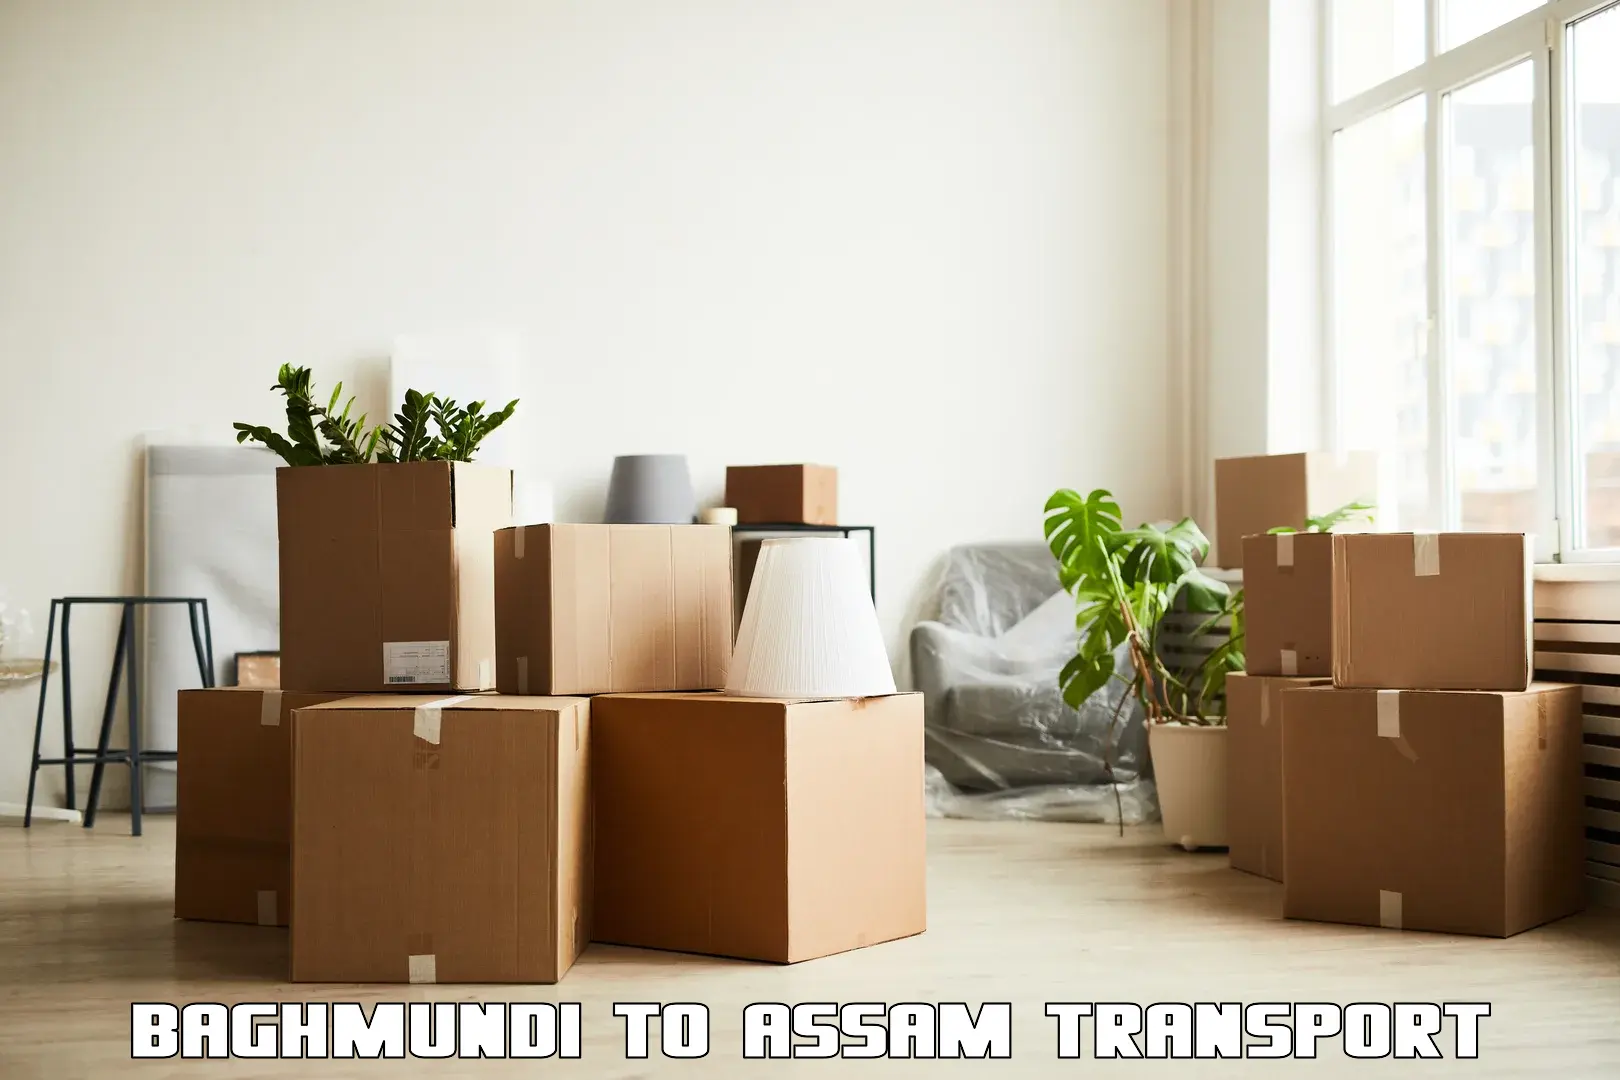 Furniture transport service Baghmundi to Kusumtola